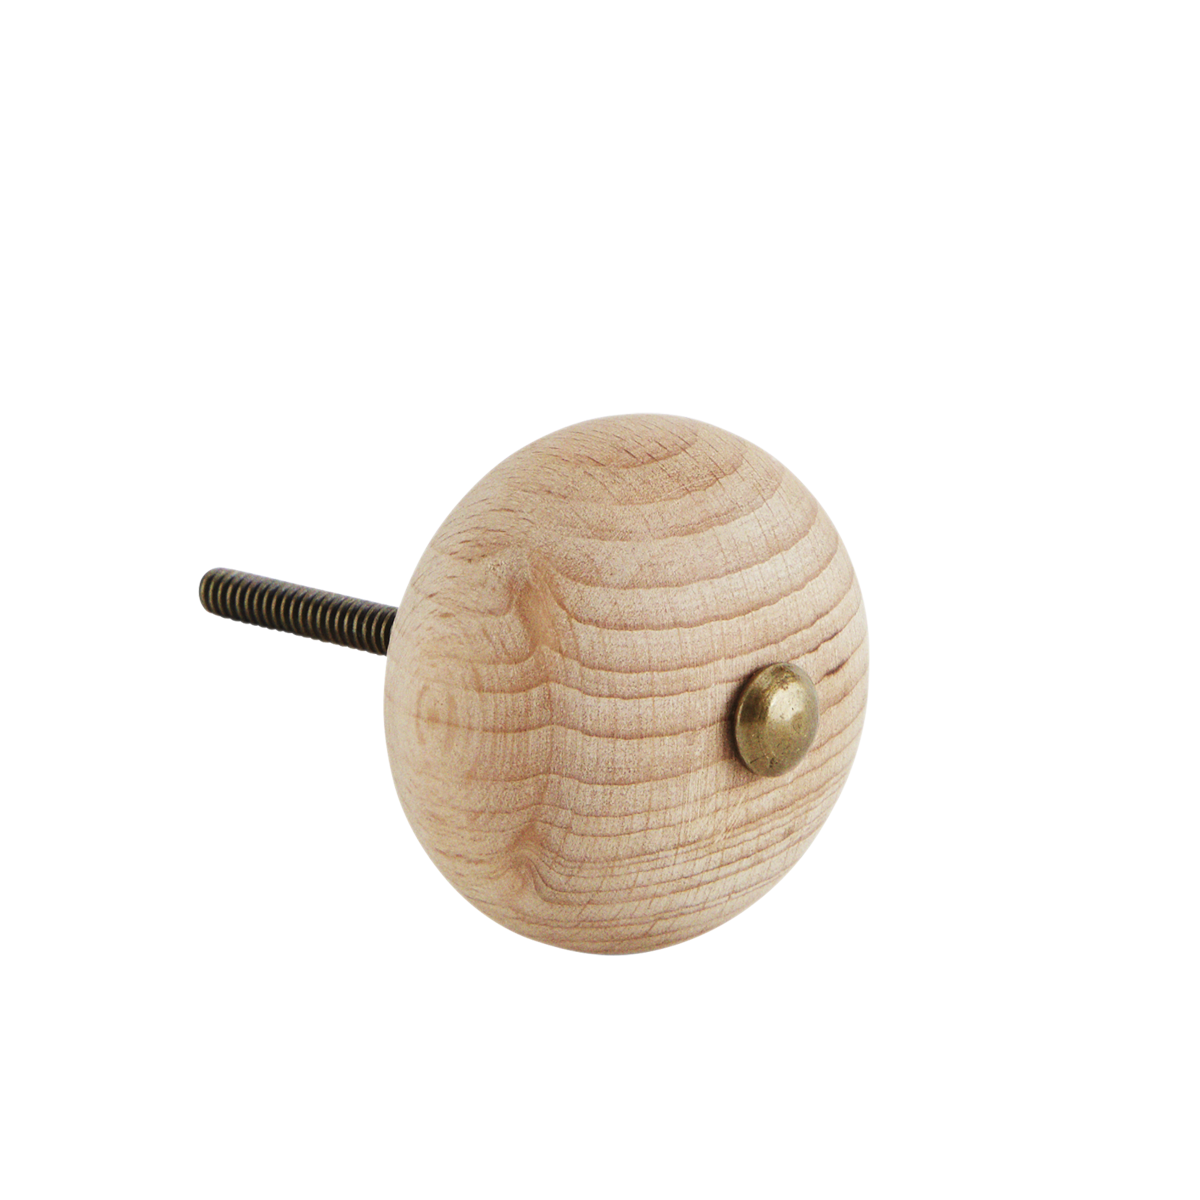 Wooden doorknob